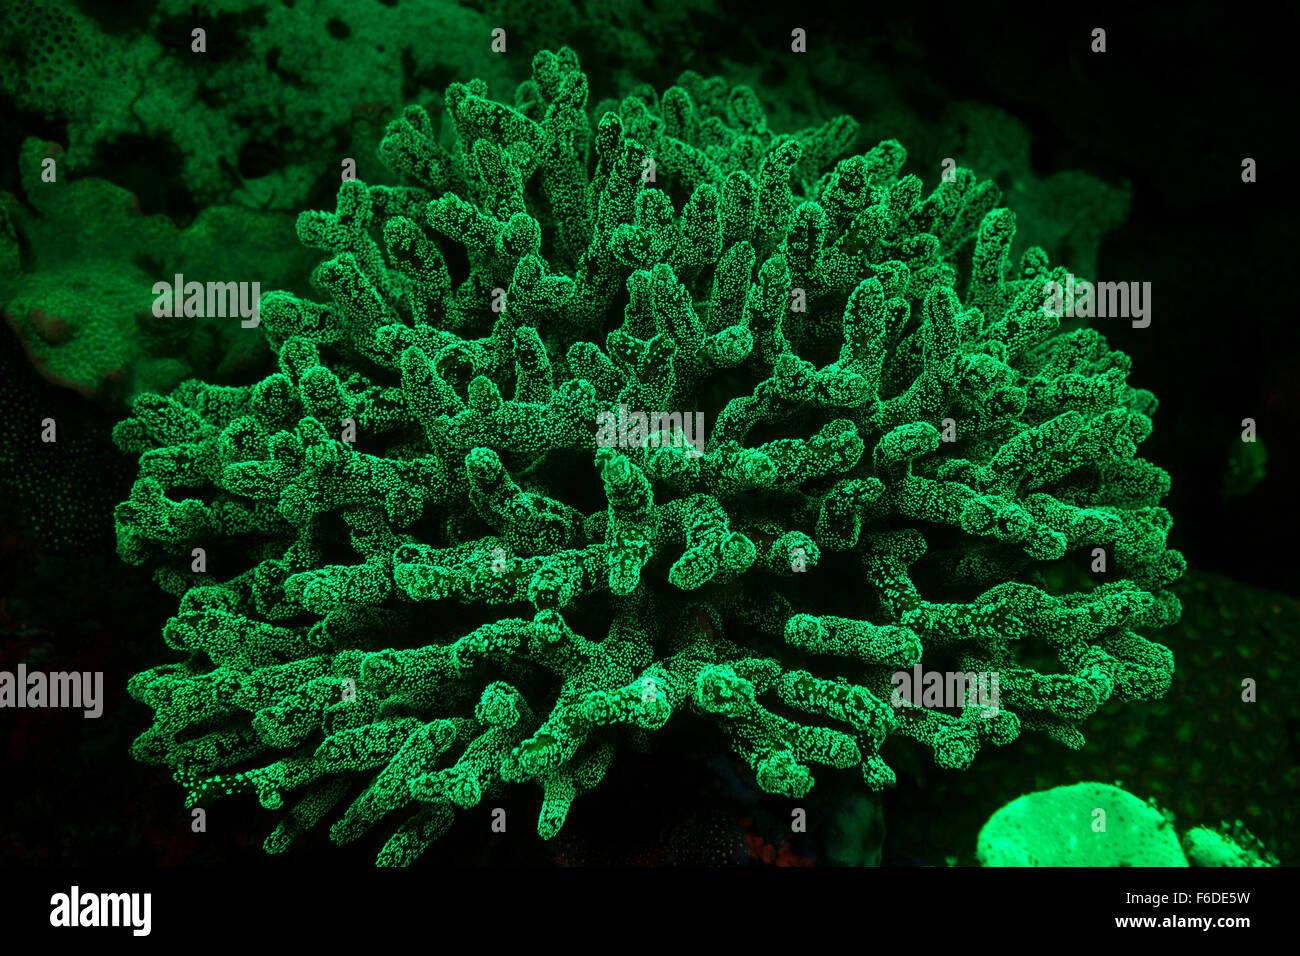 Coralli fluorescenti, Stylophora pistillata, Alor, Indonesia Foto Stock